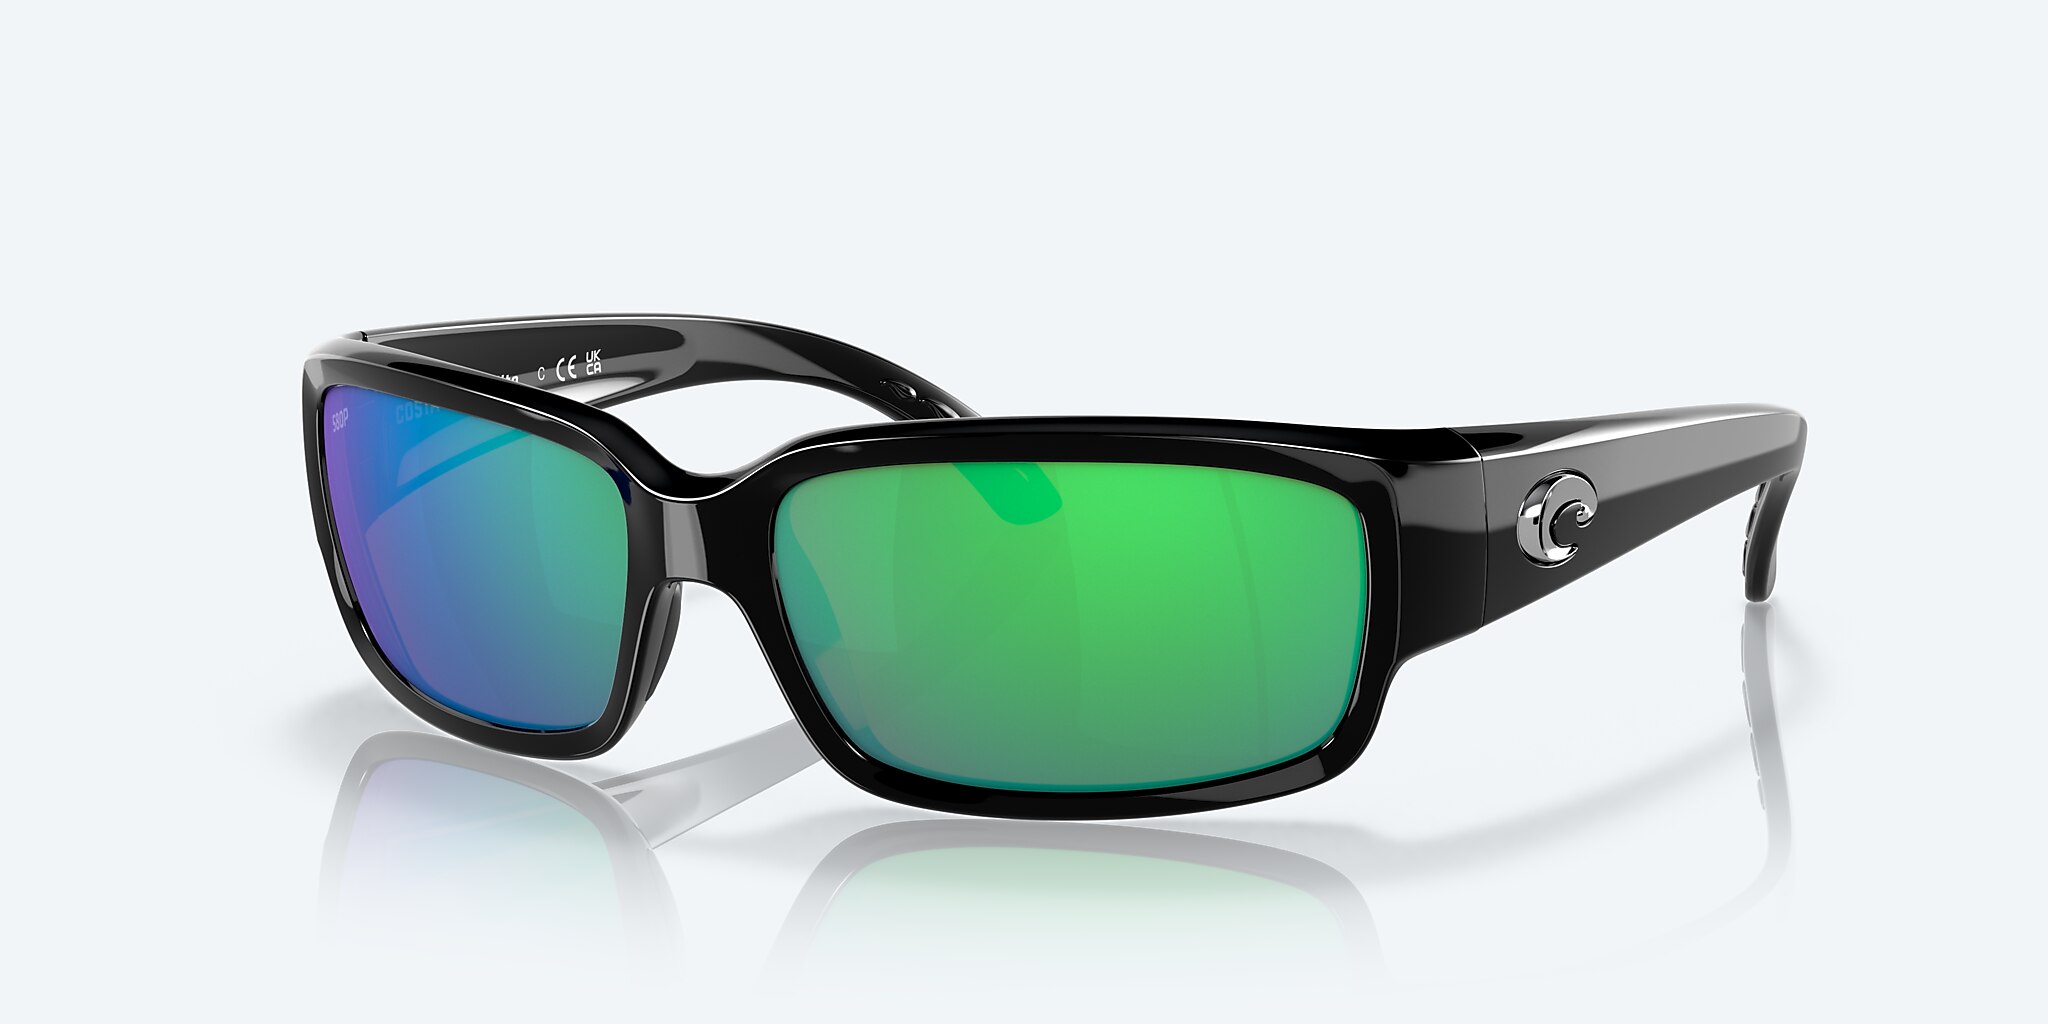 Caballito Polarized Sunglasses in Green Mirror